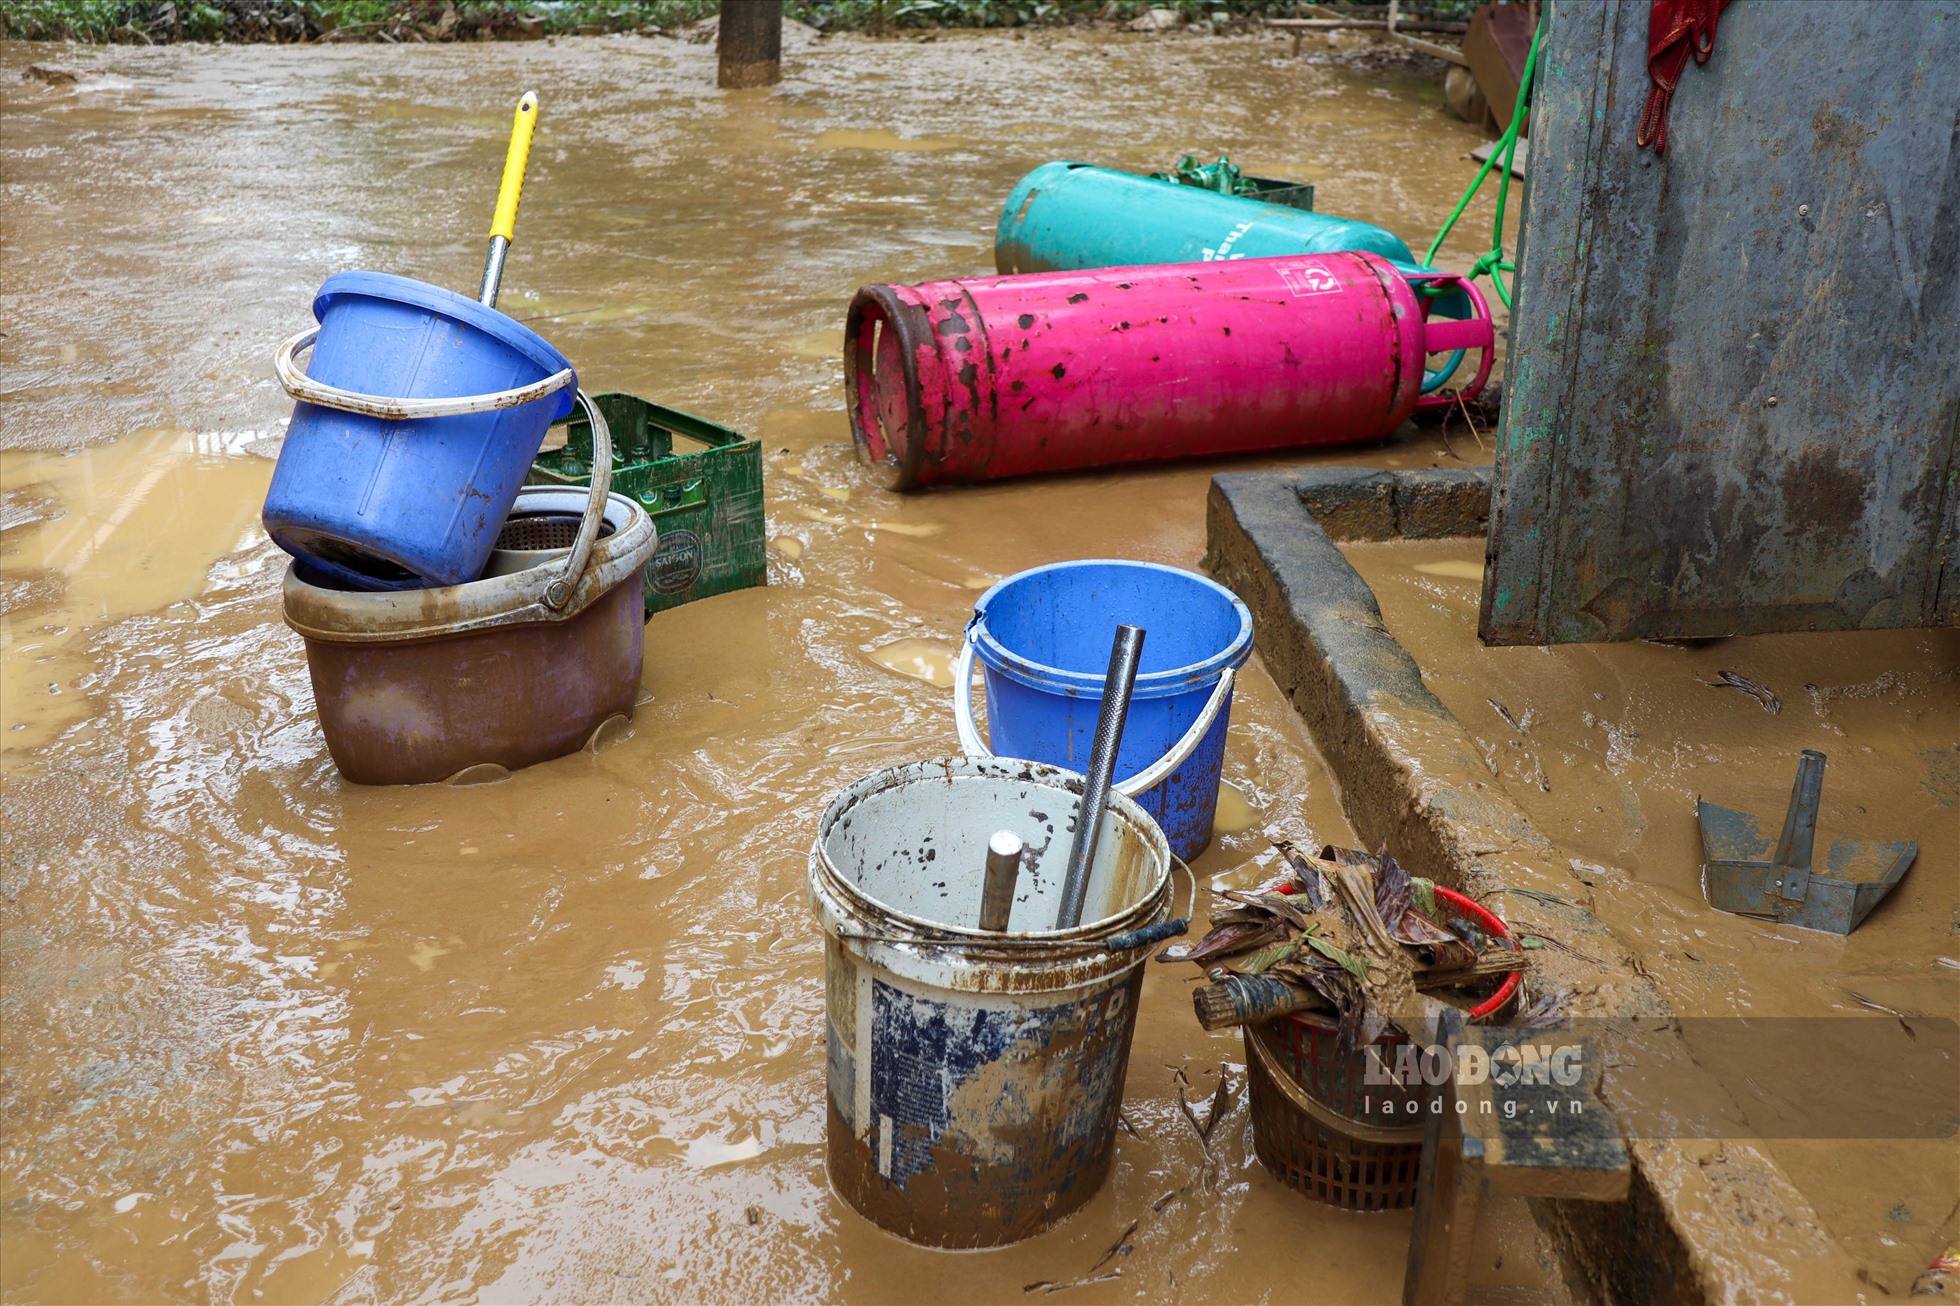 Tính đến 16 ngày 9.9, mưa lũ trên địa bản huyện Lương Sơn đã làm 2 người chết do bị lũ cuốn trôi. Hơn 700 người phải sơ tán, 148 người bị mắc kẹt dọc sông bùi đã được giải cứu, hơn 800 ngôi nhà, trụ sở, trường học bị nước ngập sâu trong nước và nhiều công trinh thủy lợi giao thông, công nghiệp bị thiệt hại… Ước tính tổng thiệt khoảng 85 tỉ đồng.